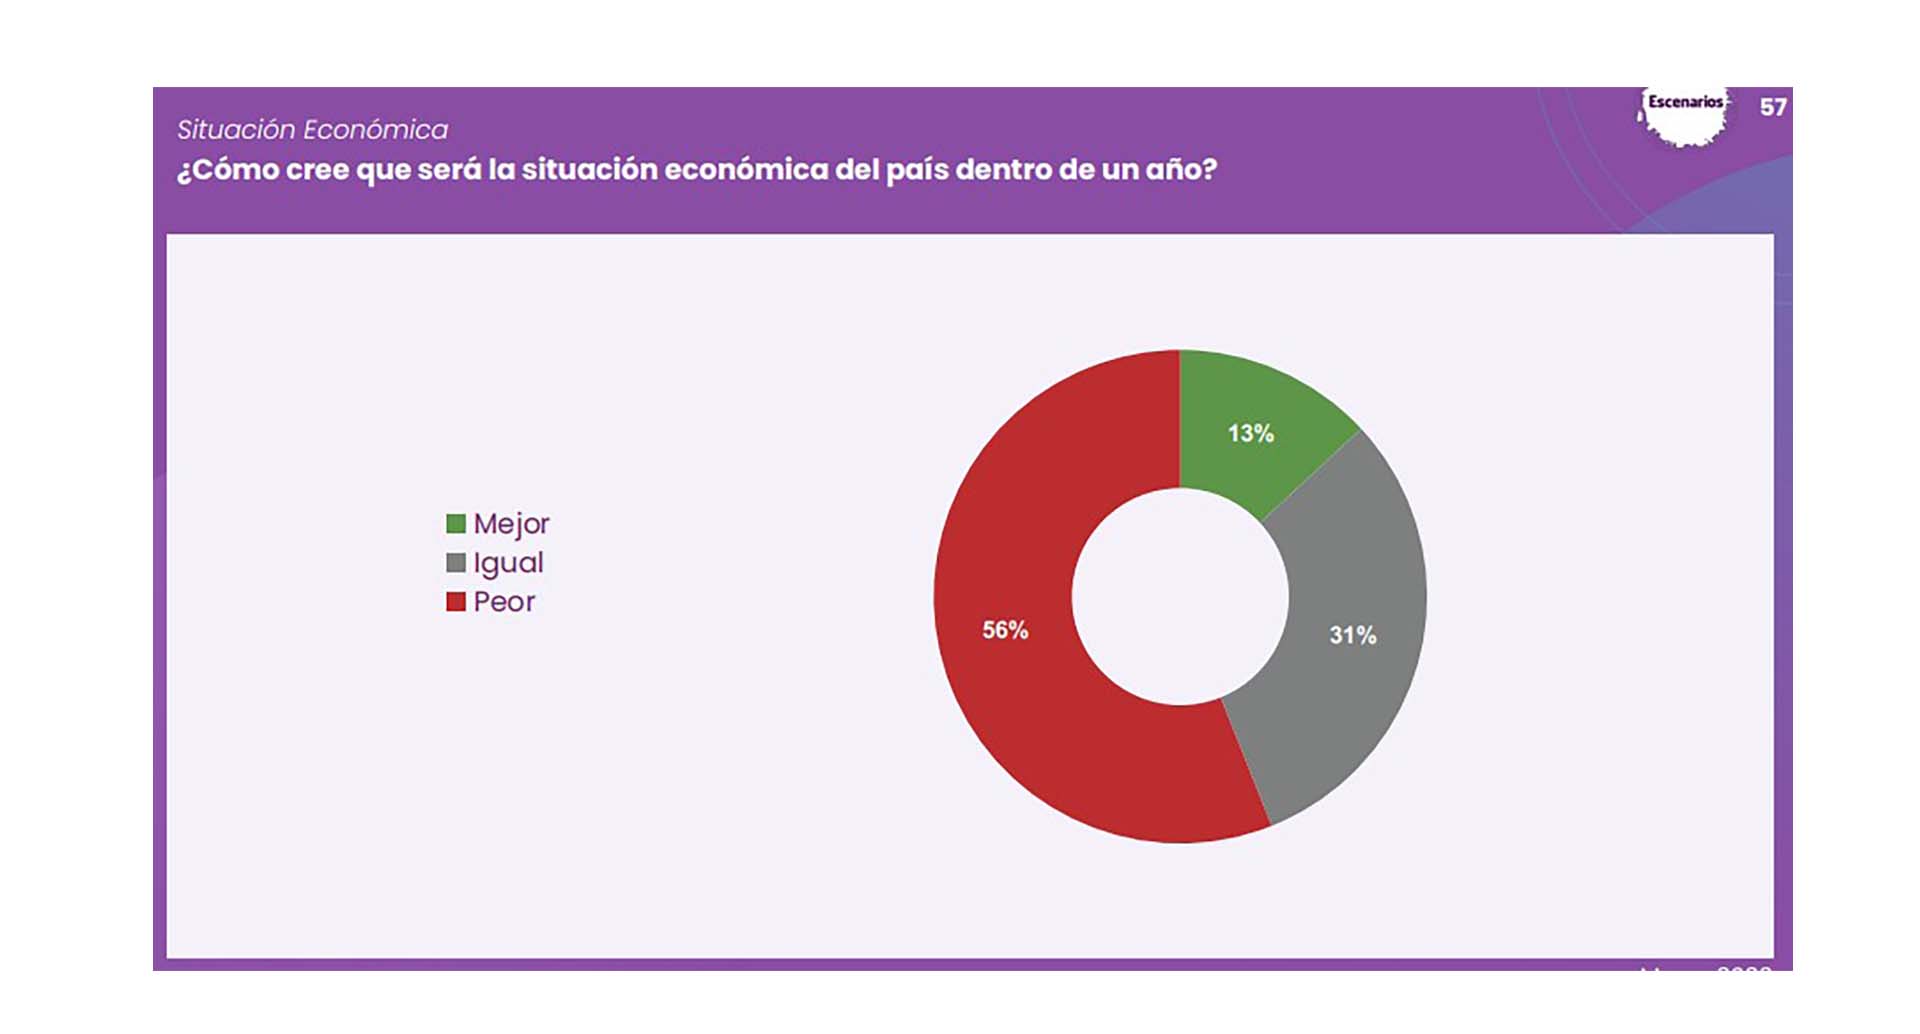 El 56% de los encuestados estima que la situación económica de Argentina dentro de un año será peor.